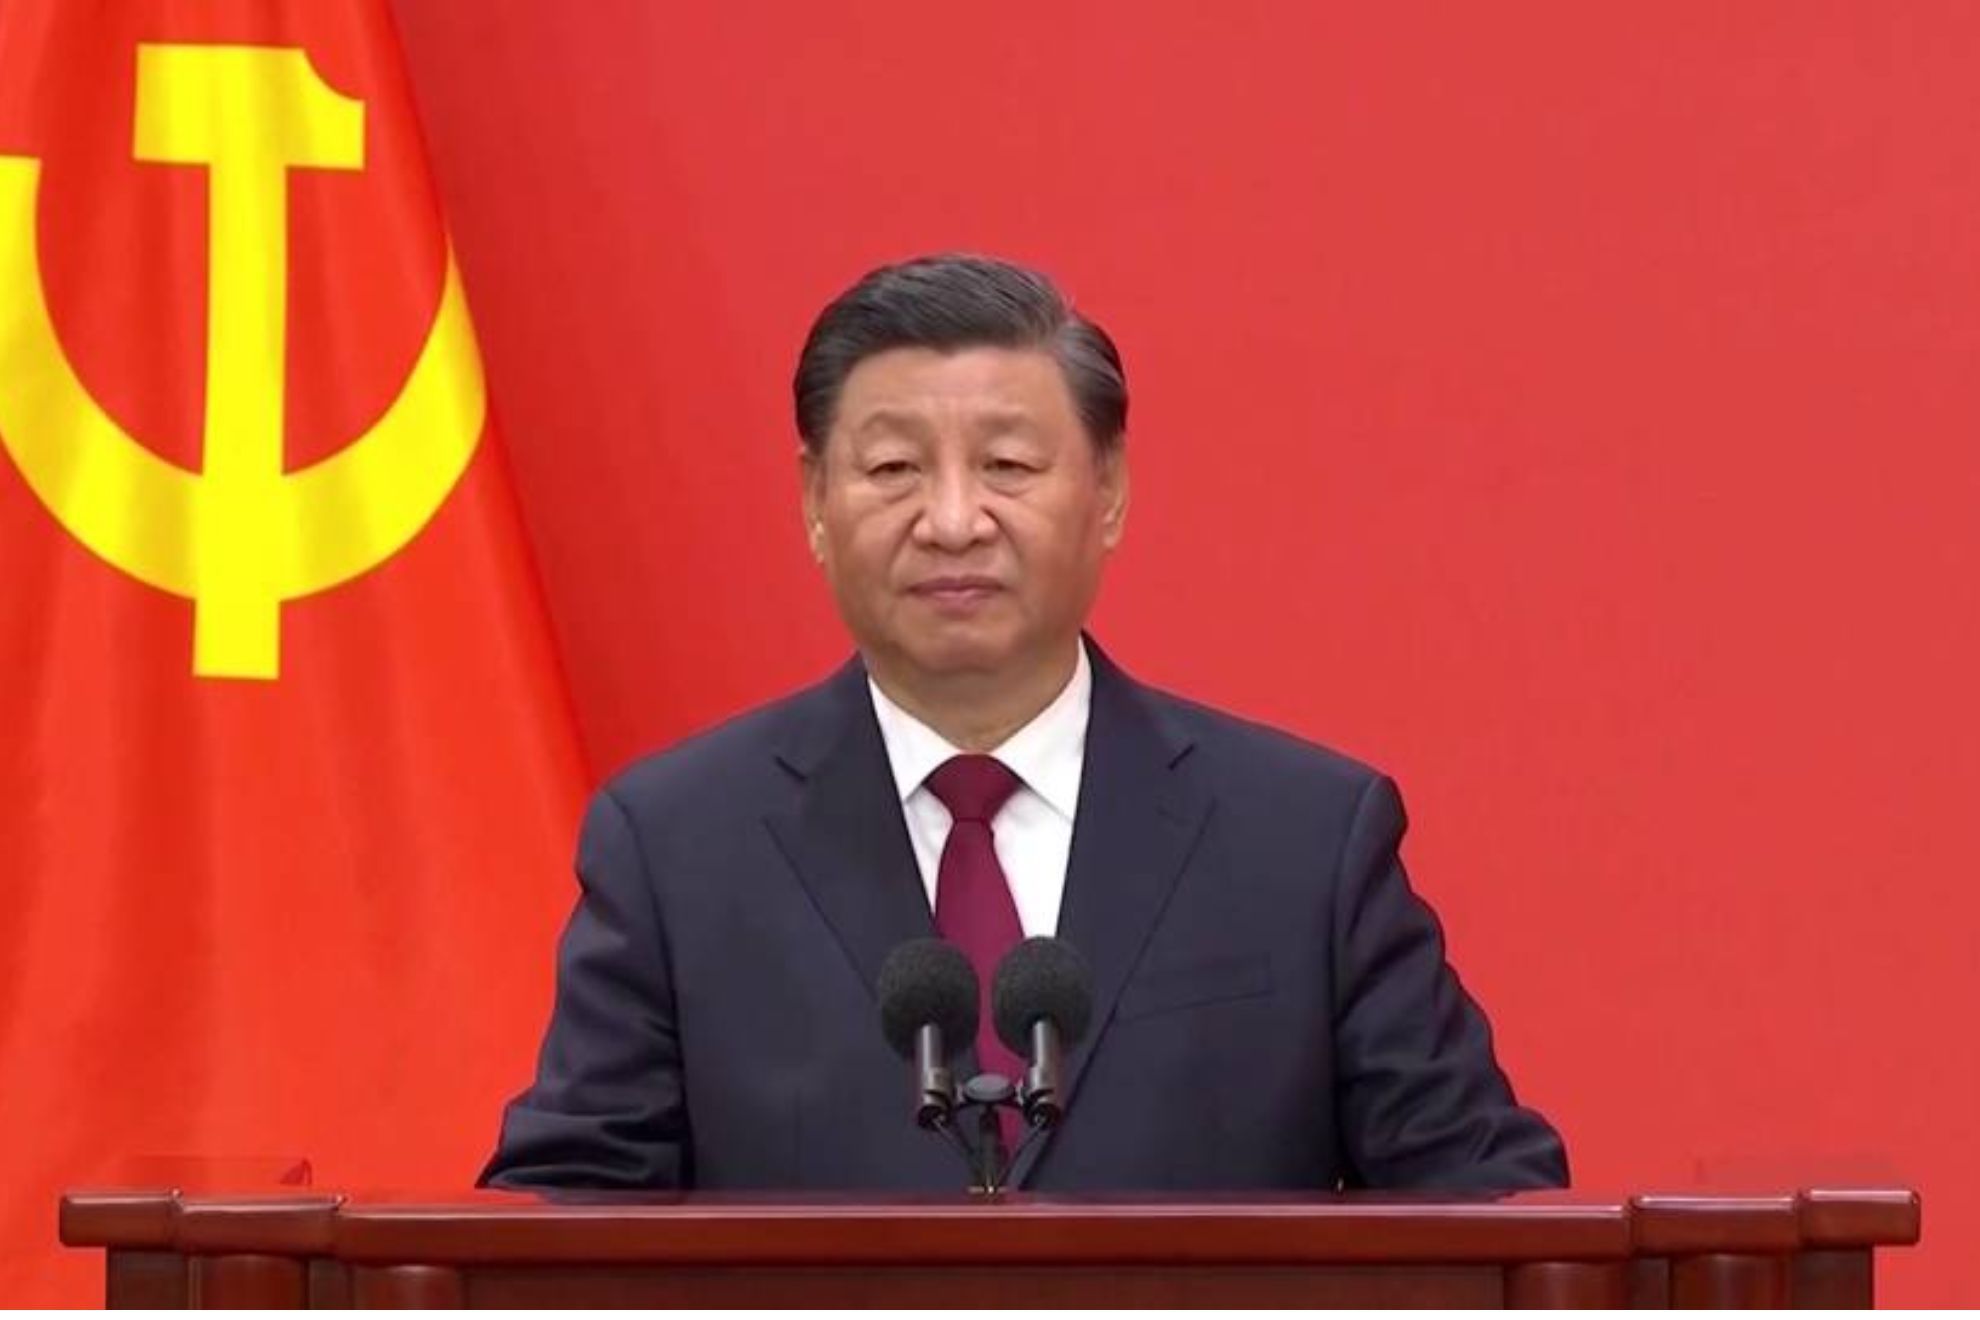 El presidente de China asegura que se están preparando para la guerra: "La seguridad de la nación es cada vez más inestable